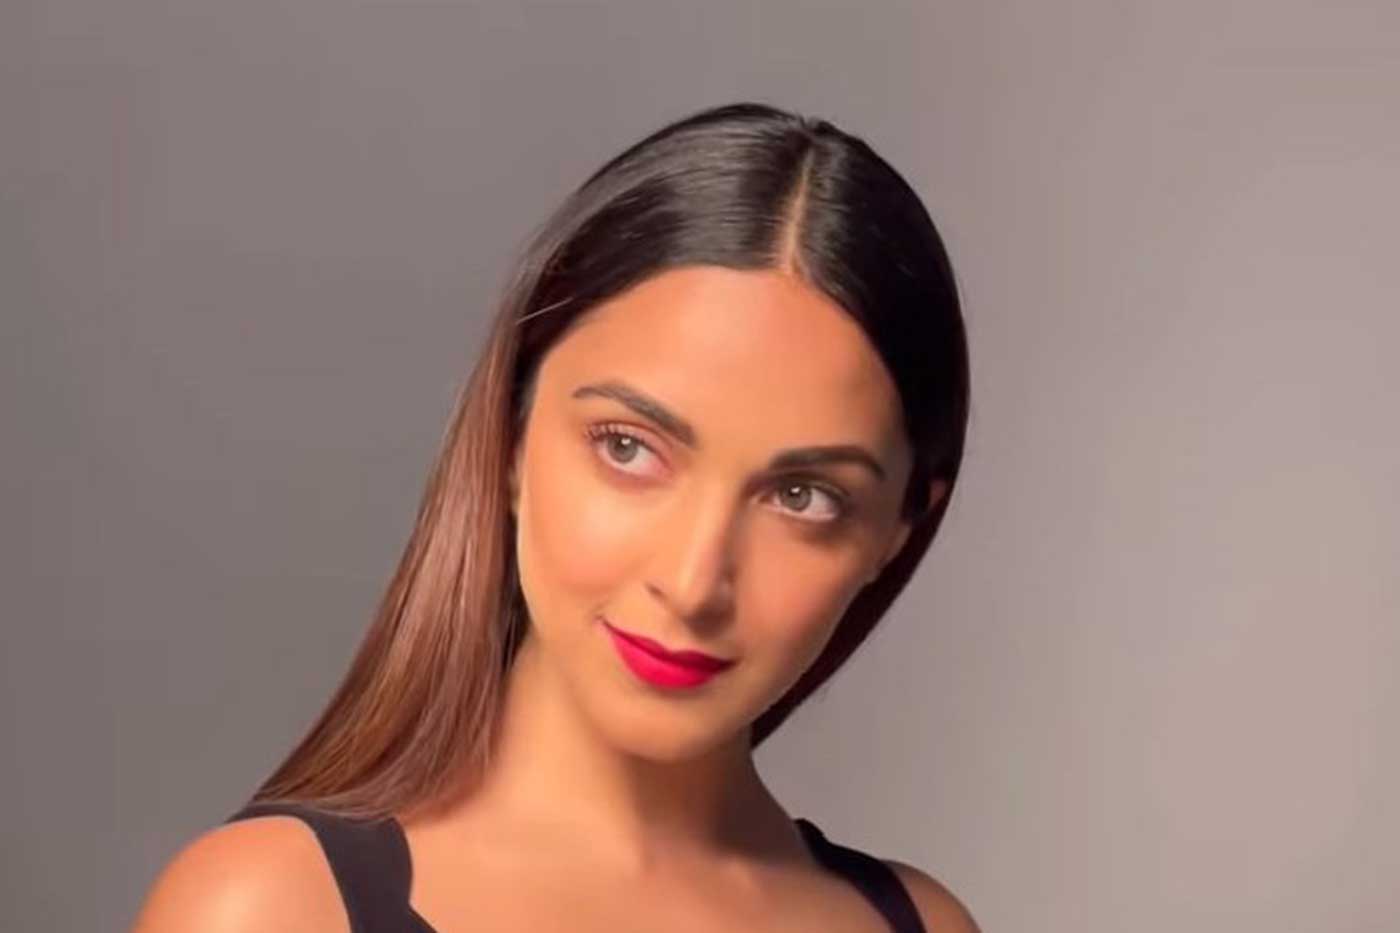 Kiara Advani is the new face of Belora Cosmetics